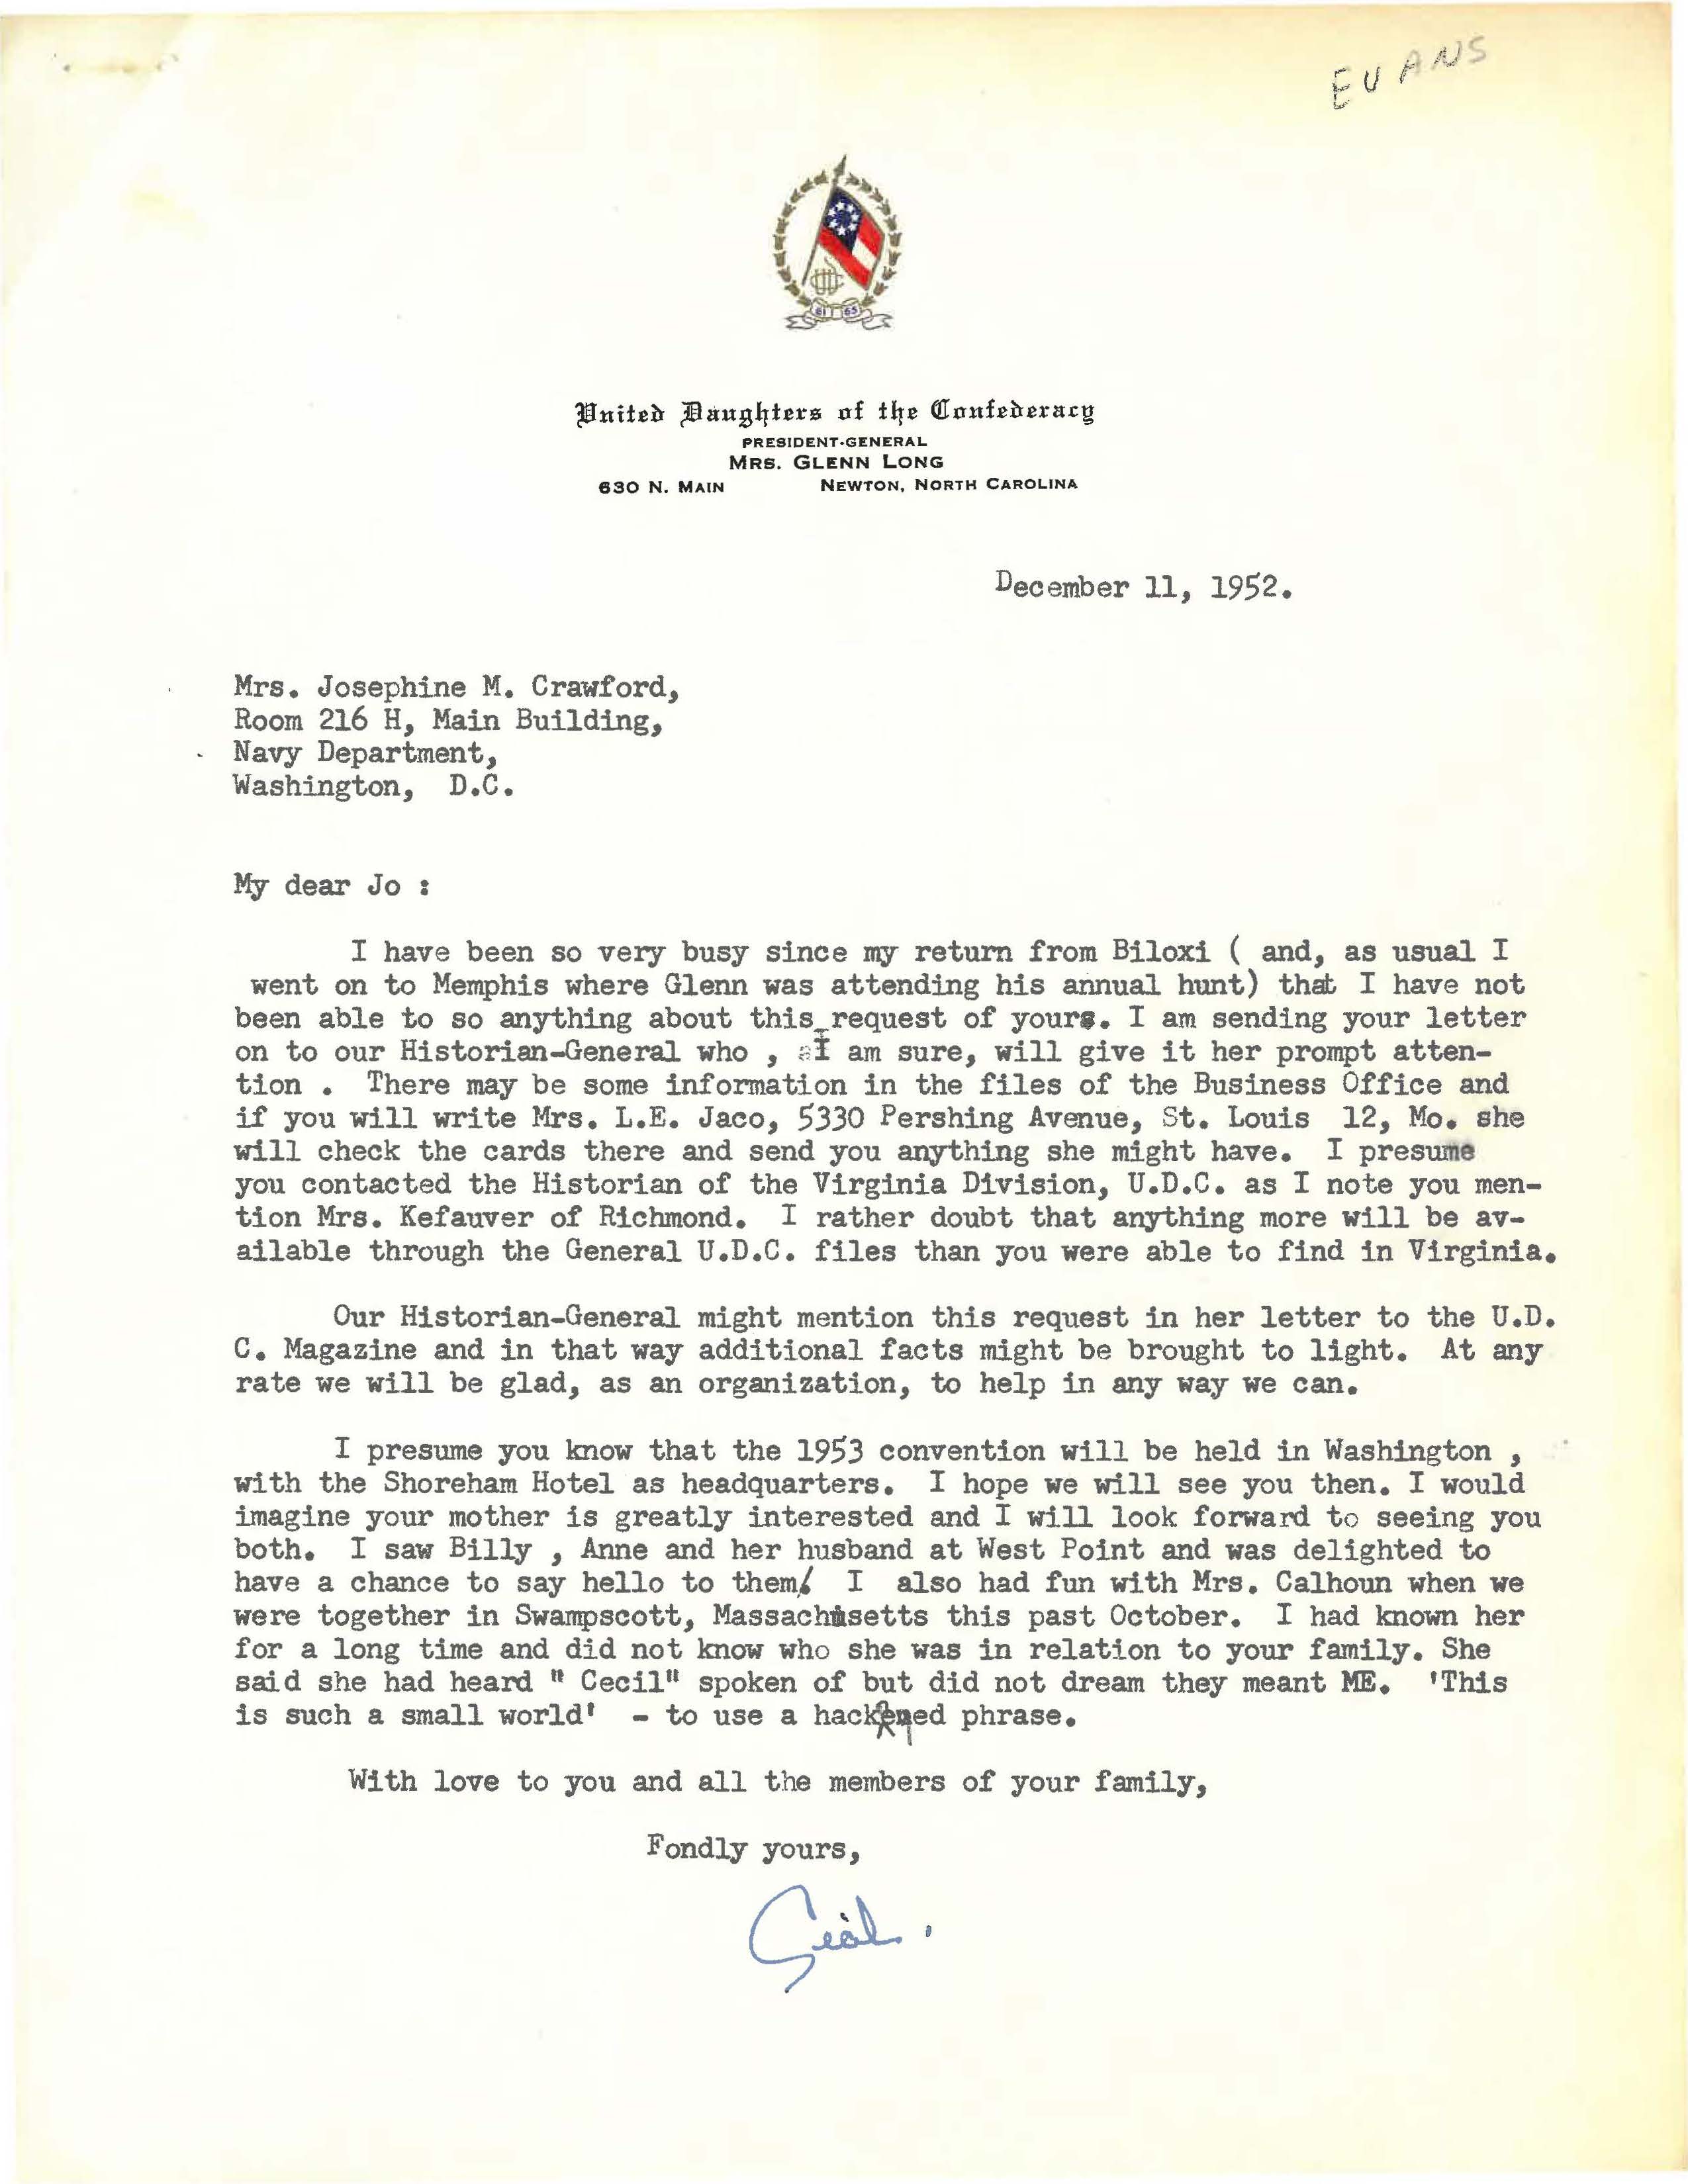 Mrs. Glenn Long letter to Josephine M. Crawford